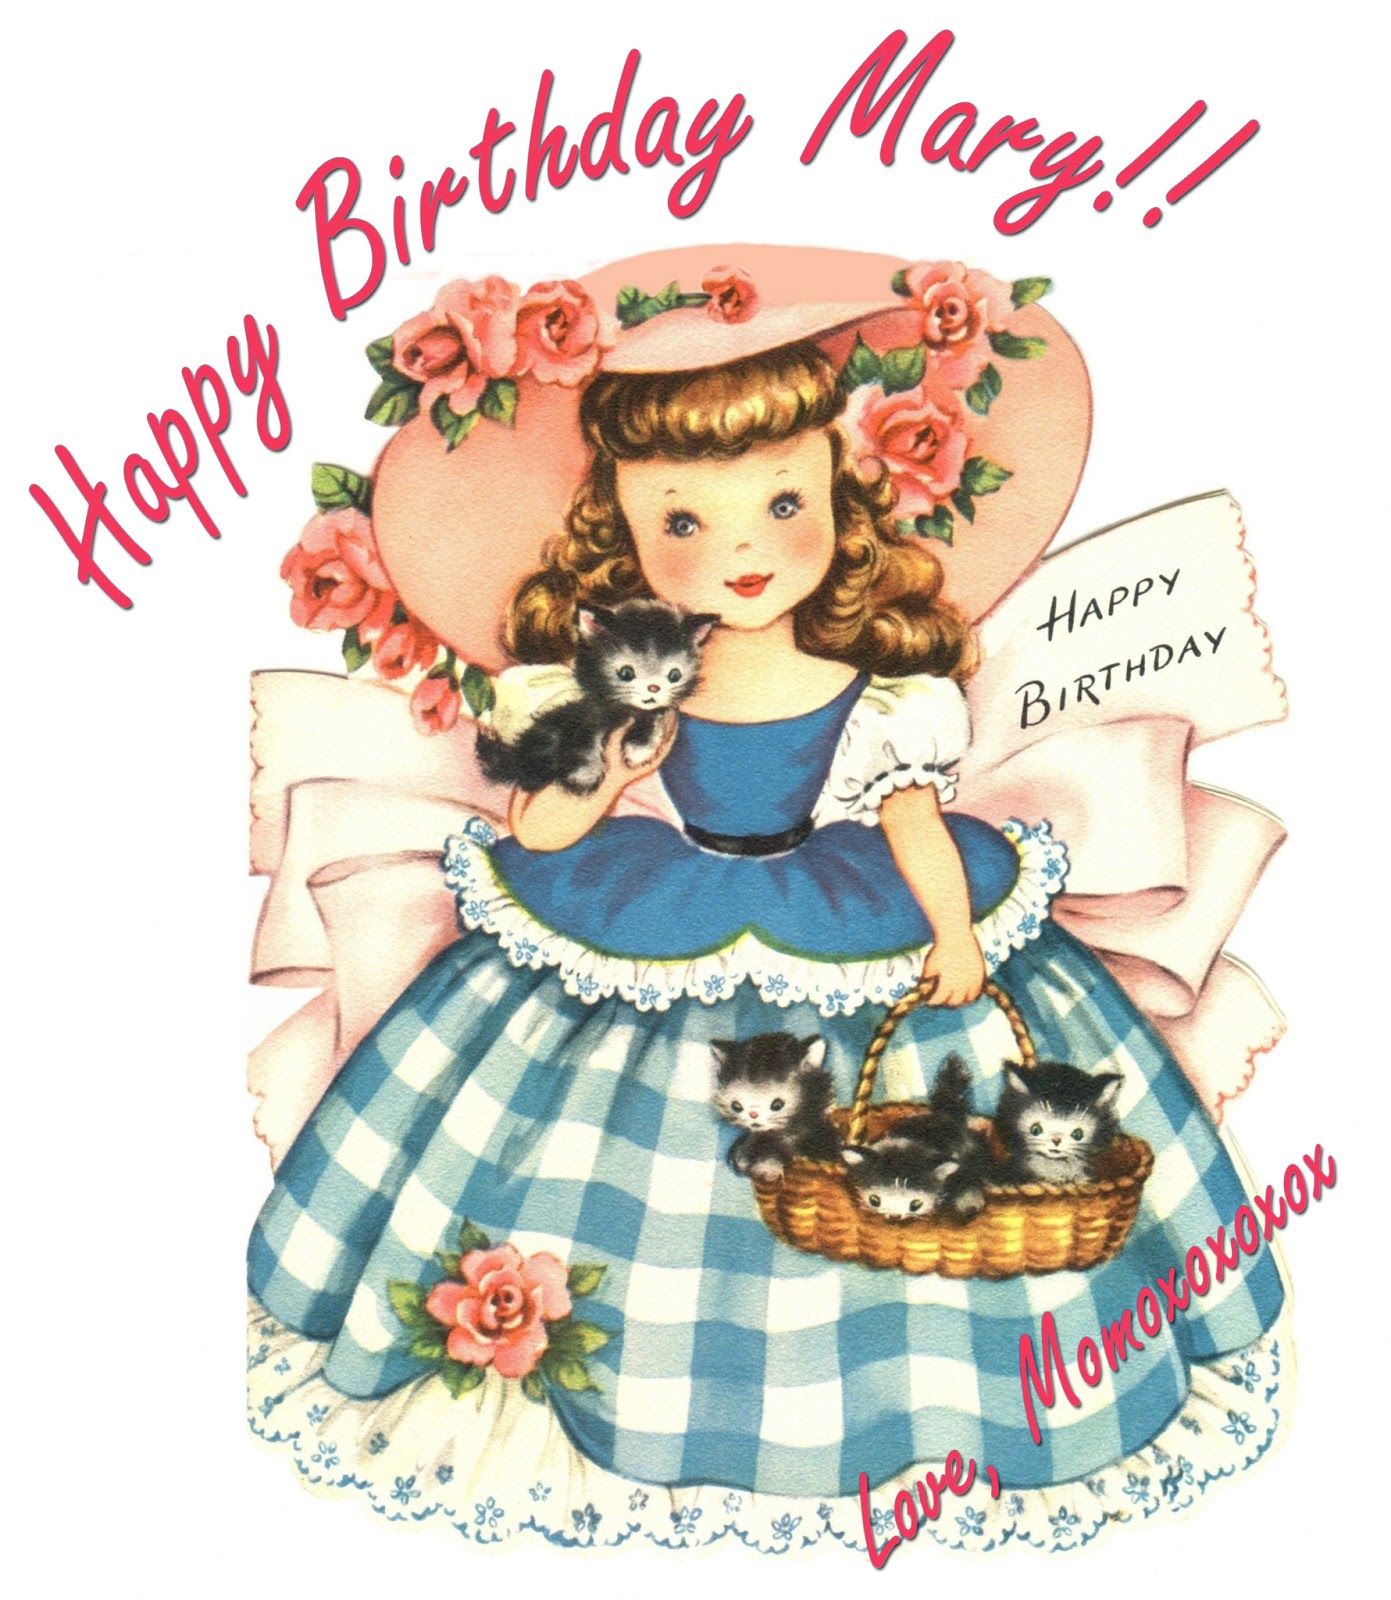 Industrioushead: Happy Birthday Mary!!